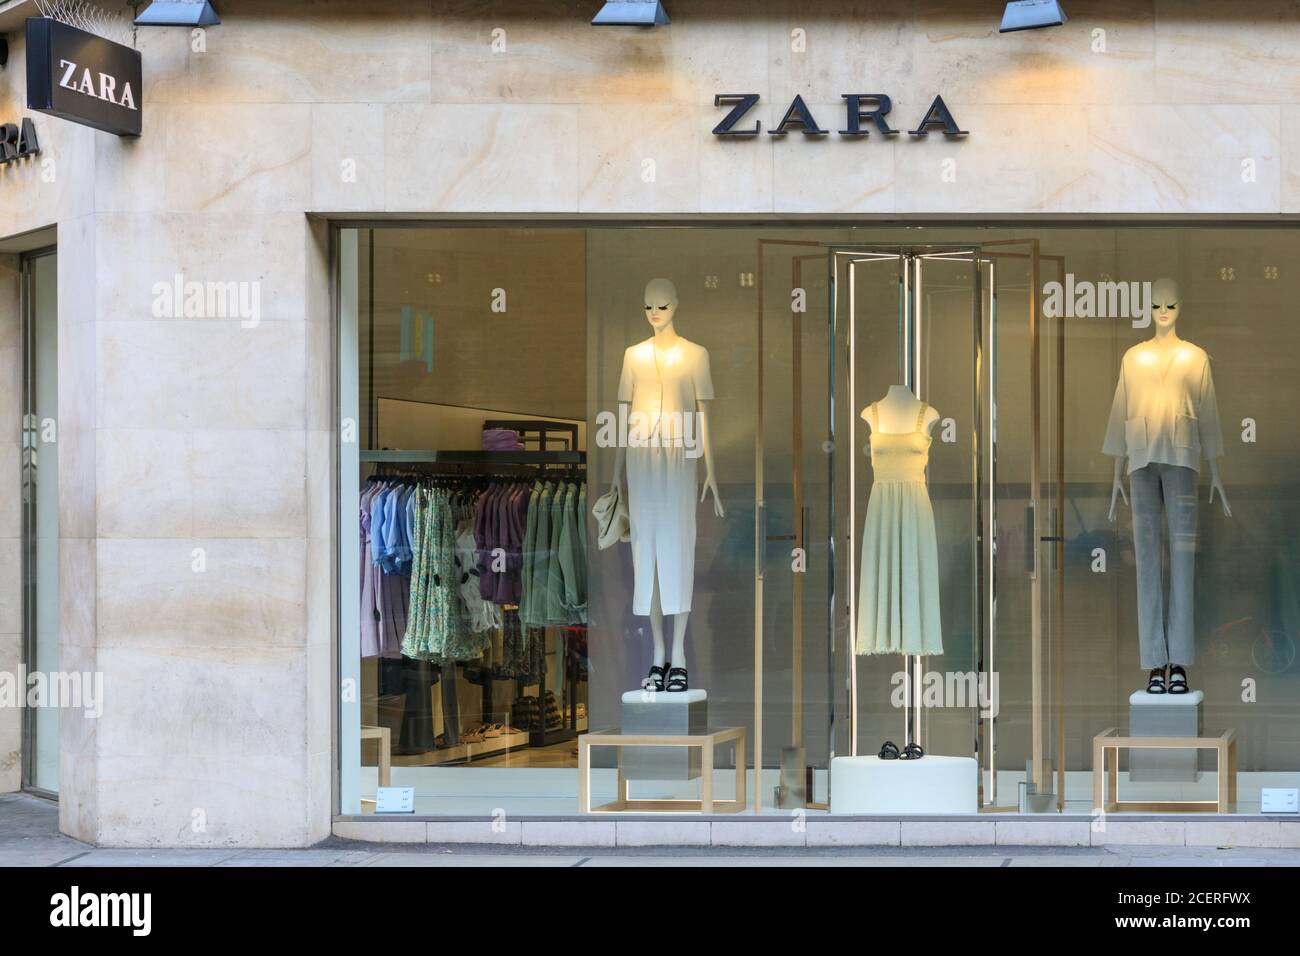 Zara Bekleidungskette und Schaufenster in London, England, Großbritannien  Stockfotografie - Alamy